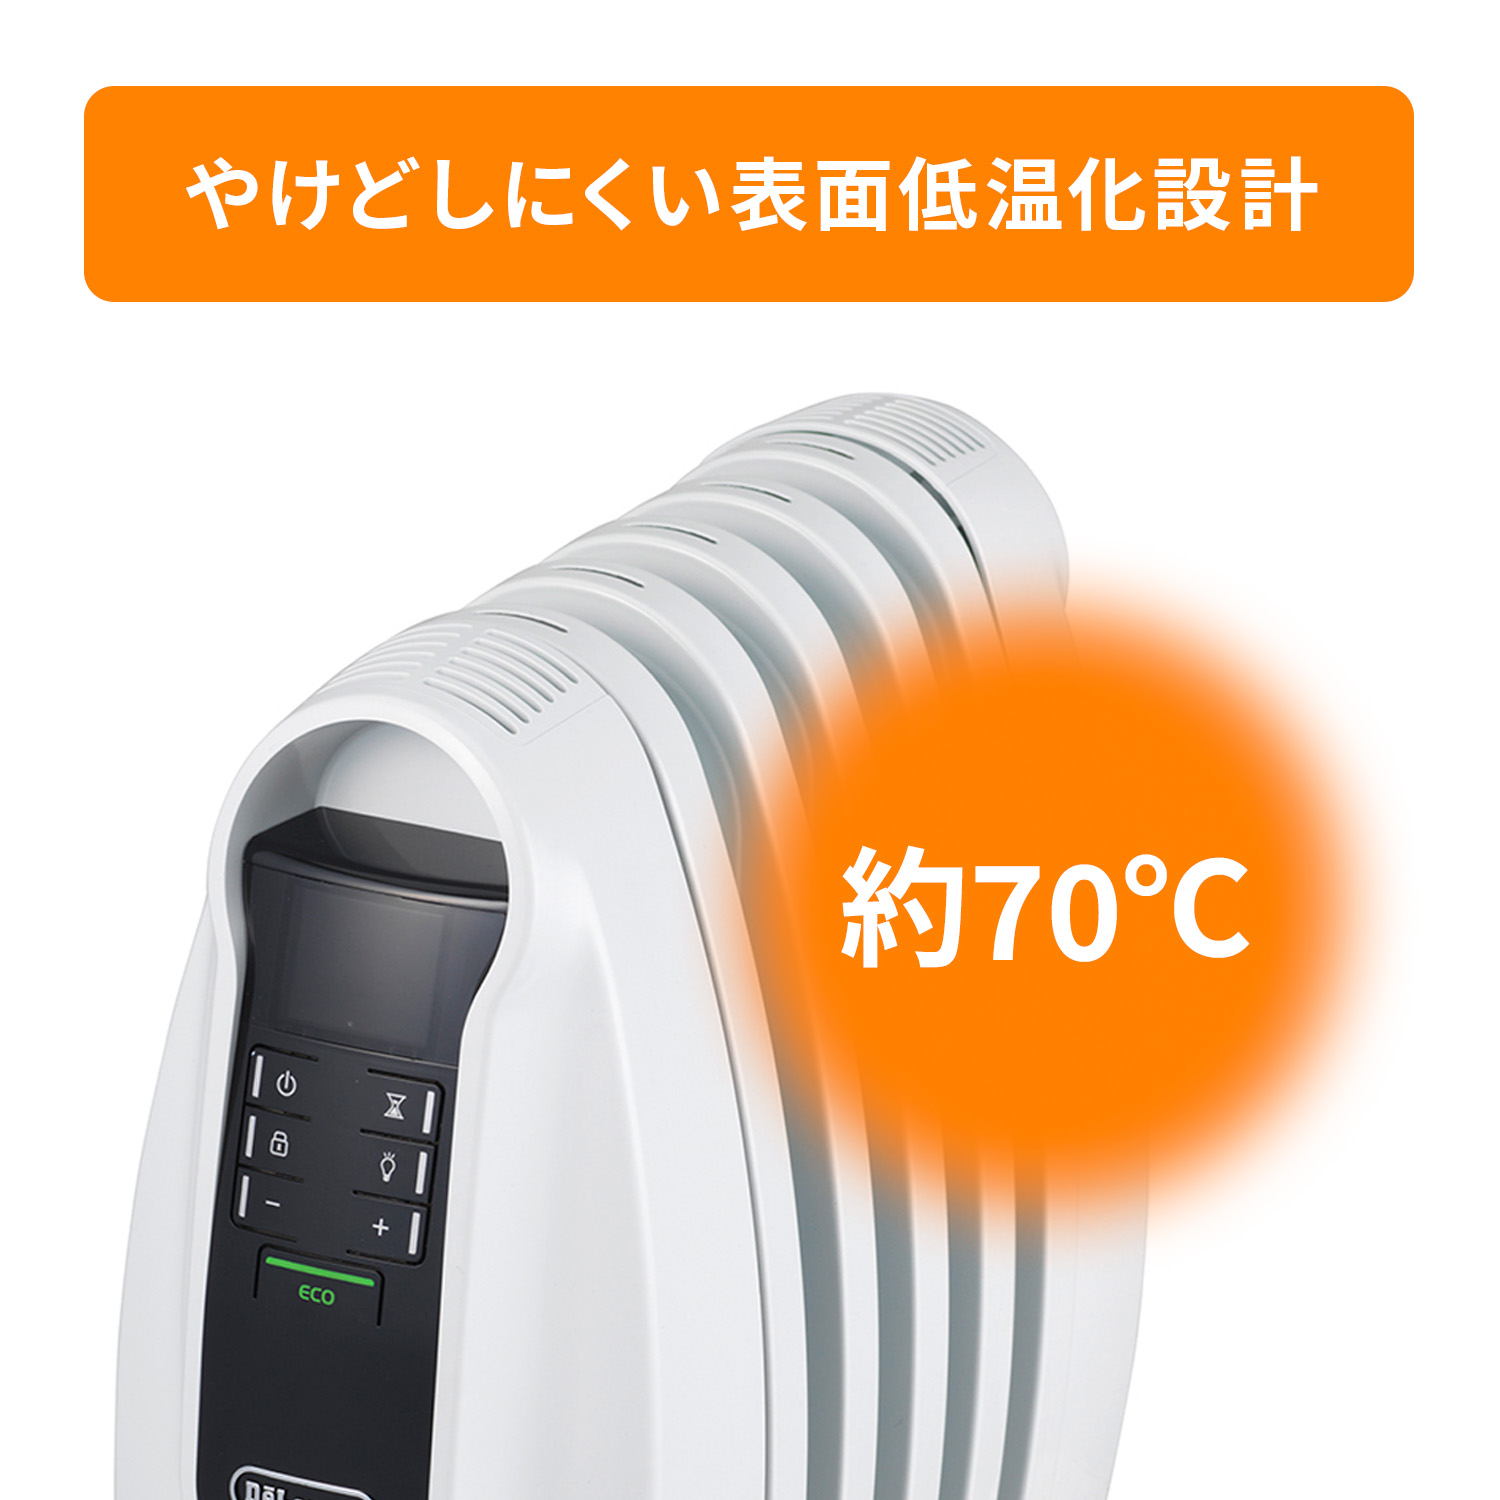 デロンギ オイルヒーター NJ0505Eの製品情報 |ゼロ風暖房デロンギ 